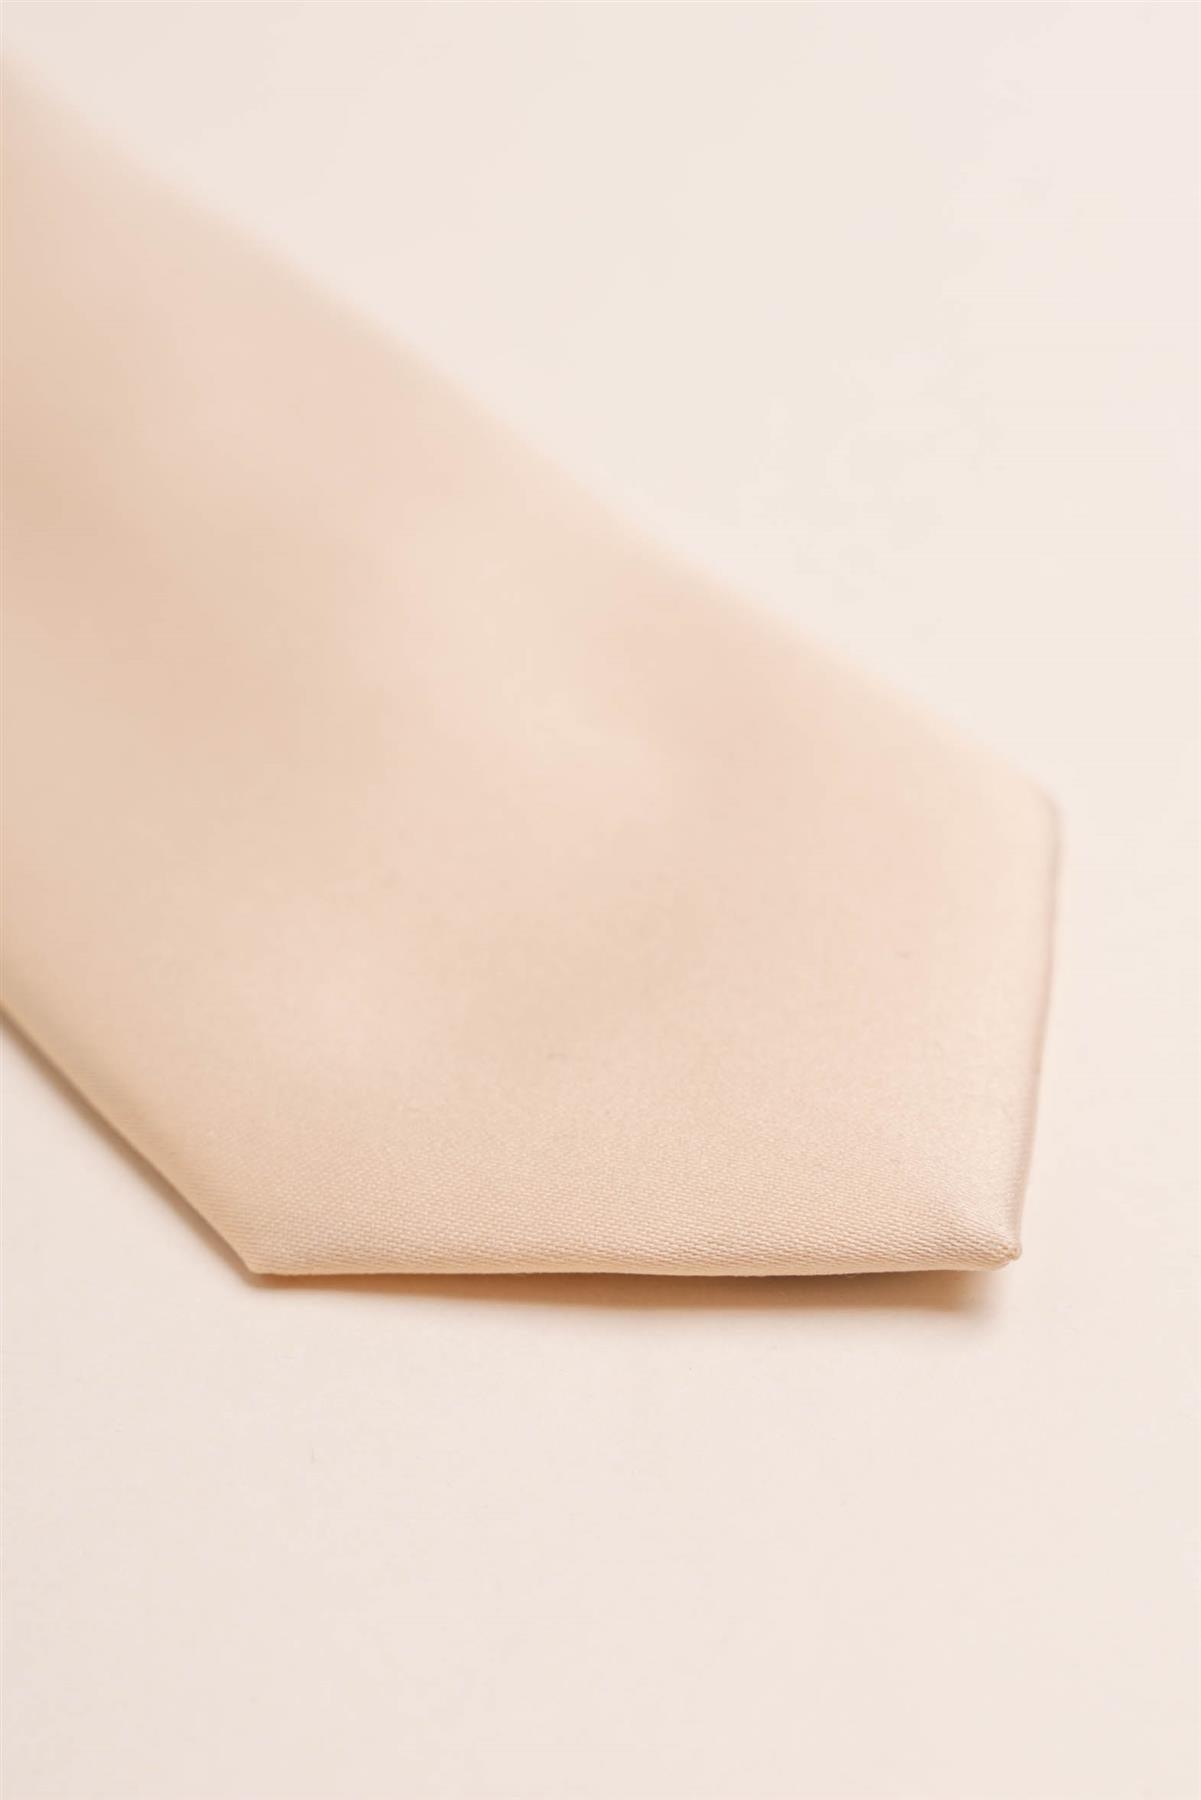 Plain sand tie set